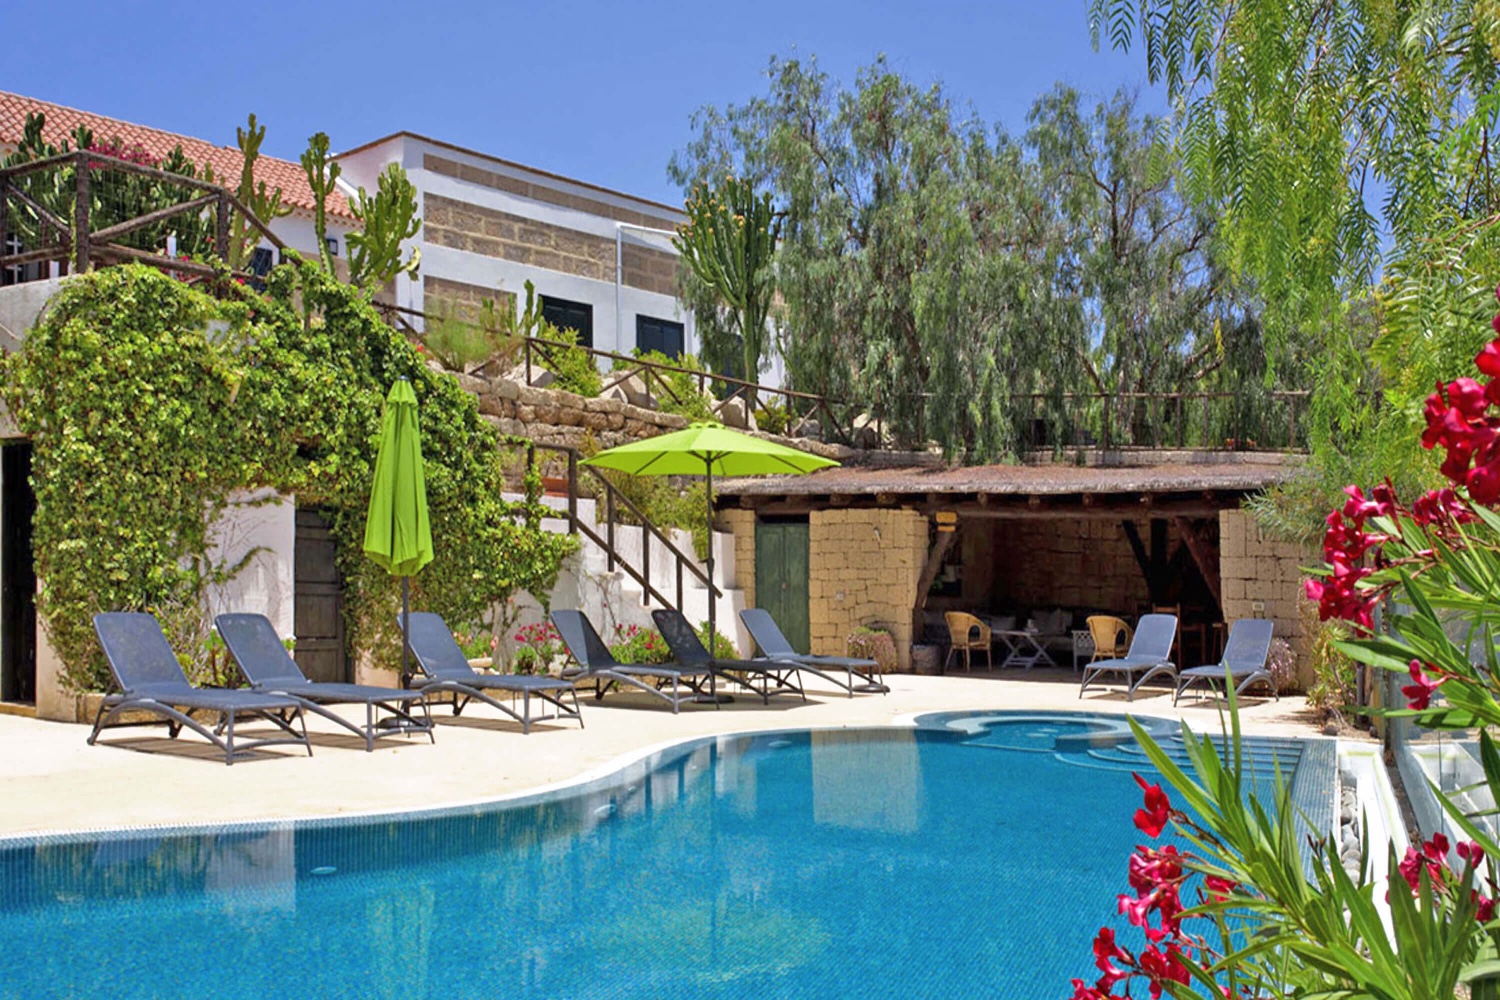 Vakantiehuis op een boerderij met een groot gemeenschappelijk zwembad voor een rustige vakantie in Tenerife